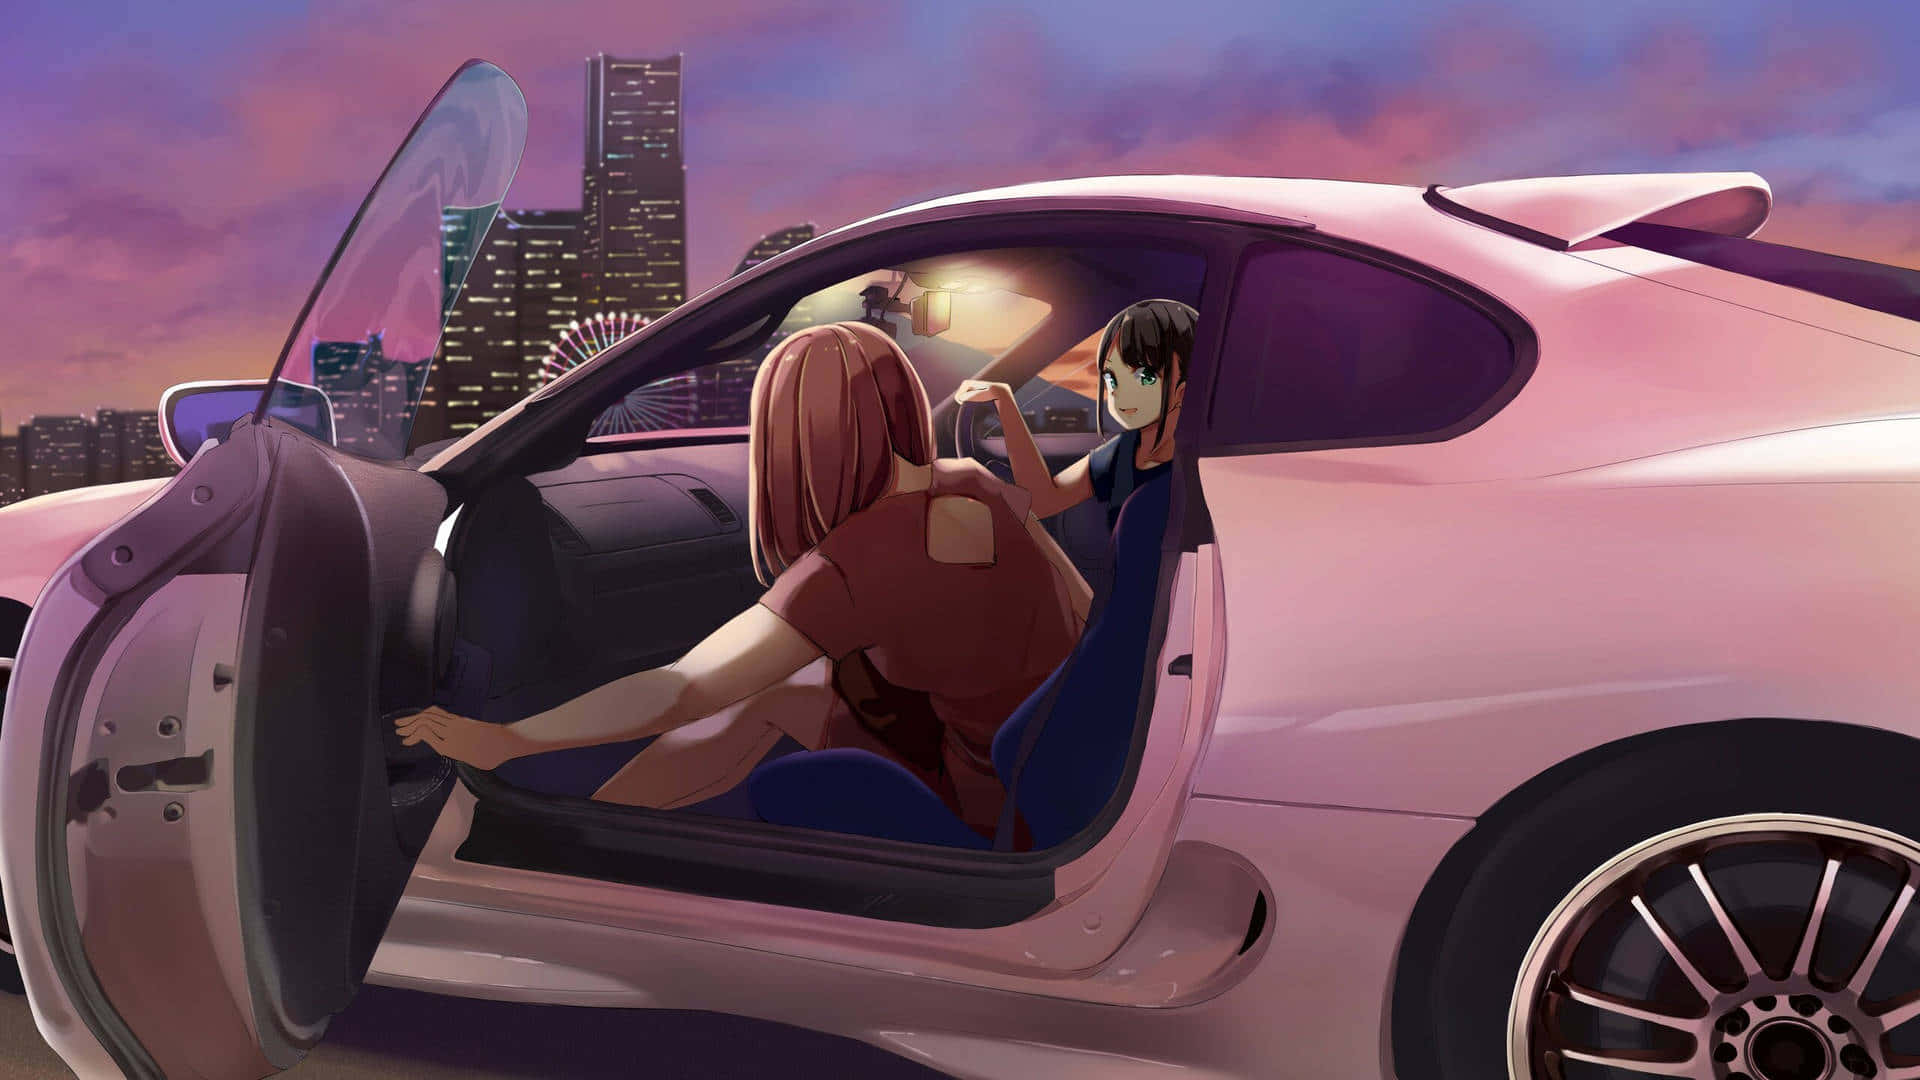 Mithoher Geschwindigkeit Durch Das Leben Rasen, Auf Traumhafte Weise: Anime Drift Wallpaper